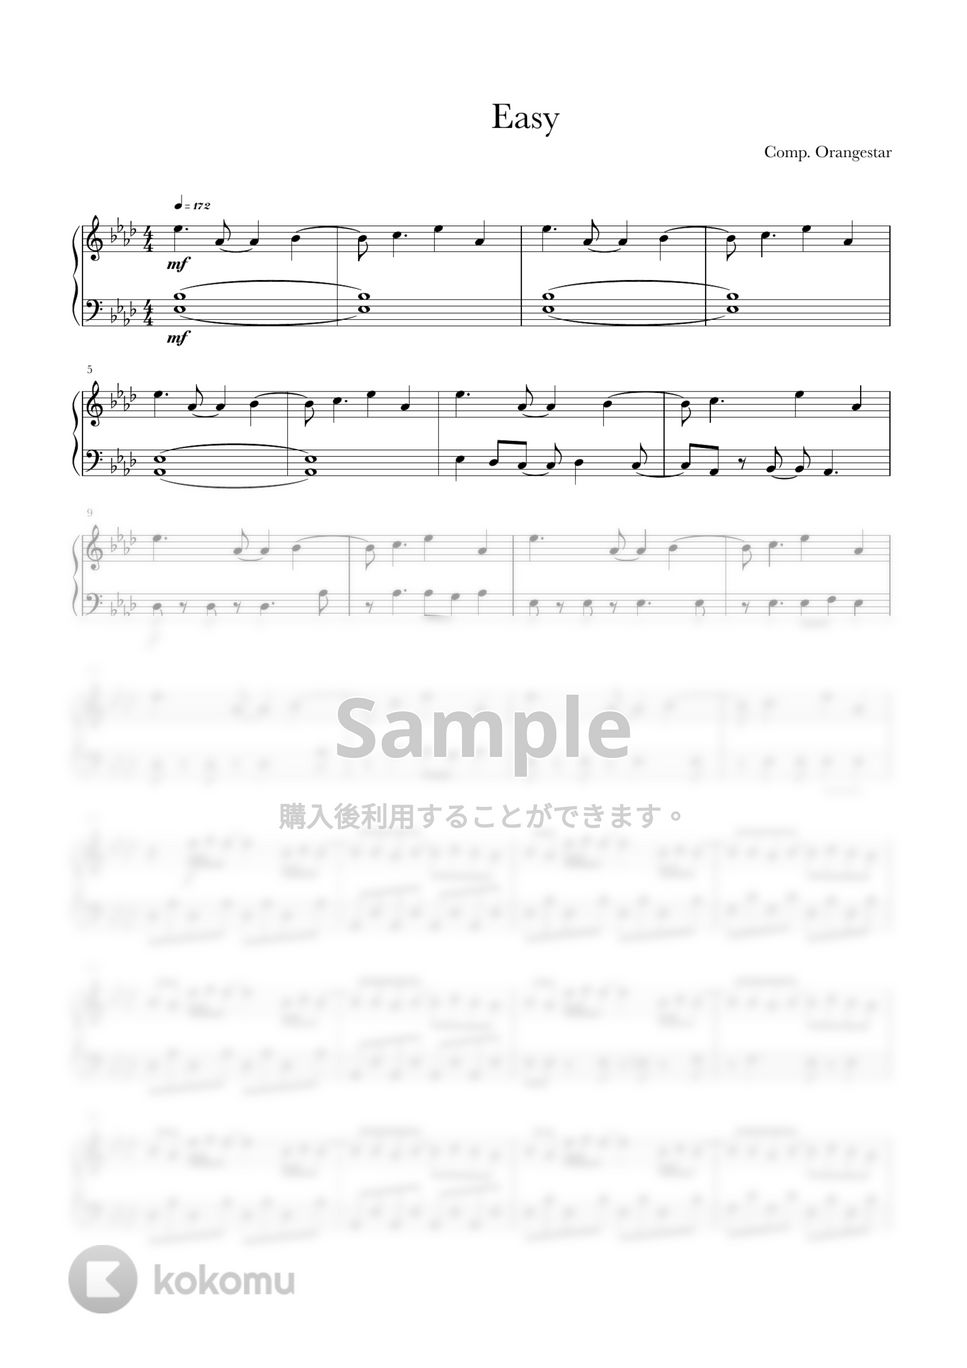 Orangestar - 快晴 (ピアノソロ初級、ワンコーラスのみ) by Ray